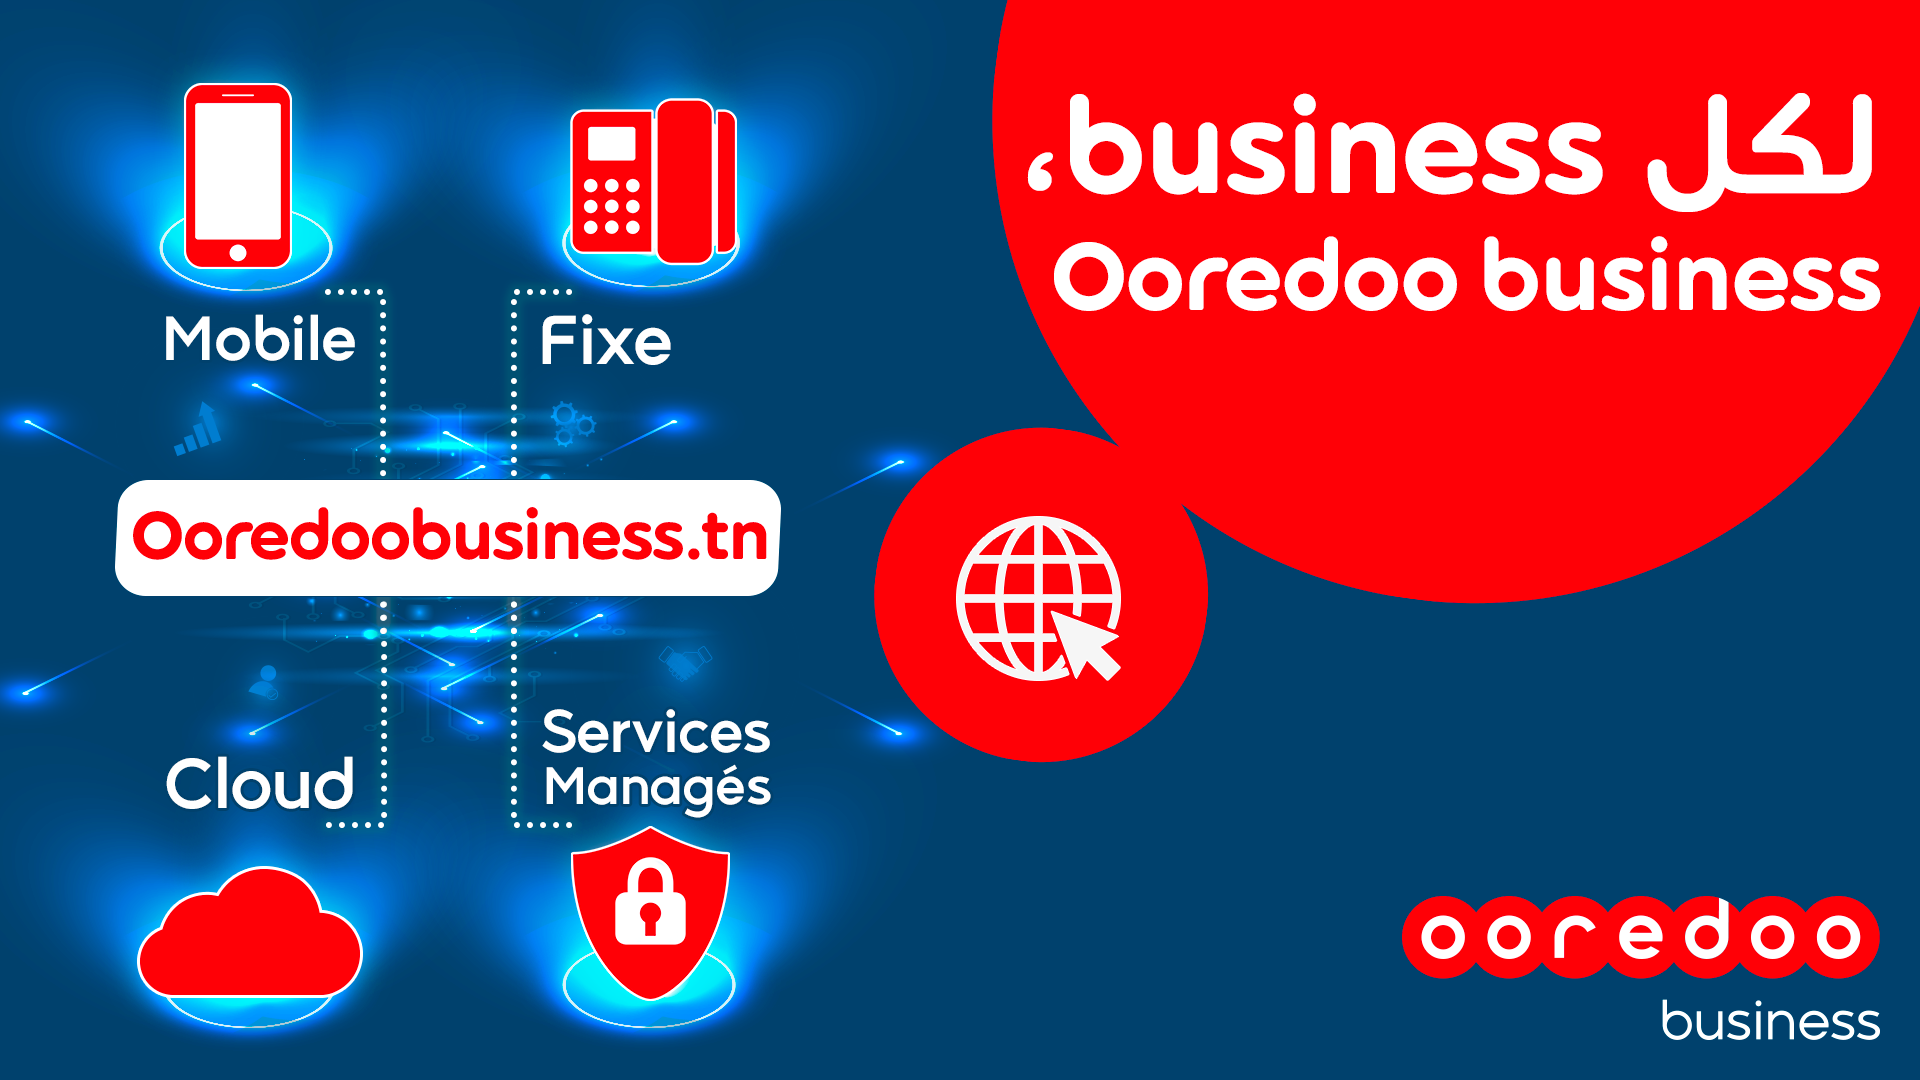 لكل business ، Ooredoo business